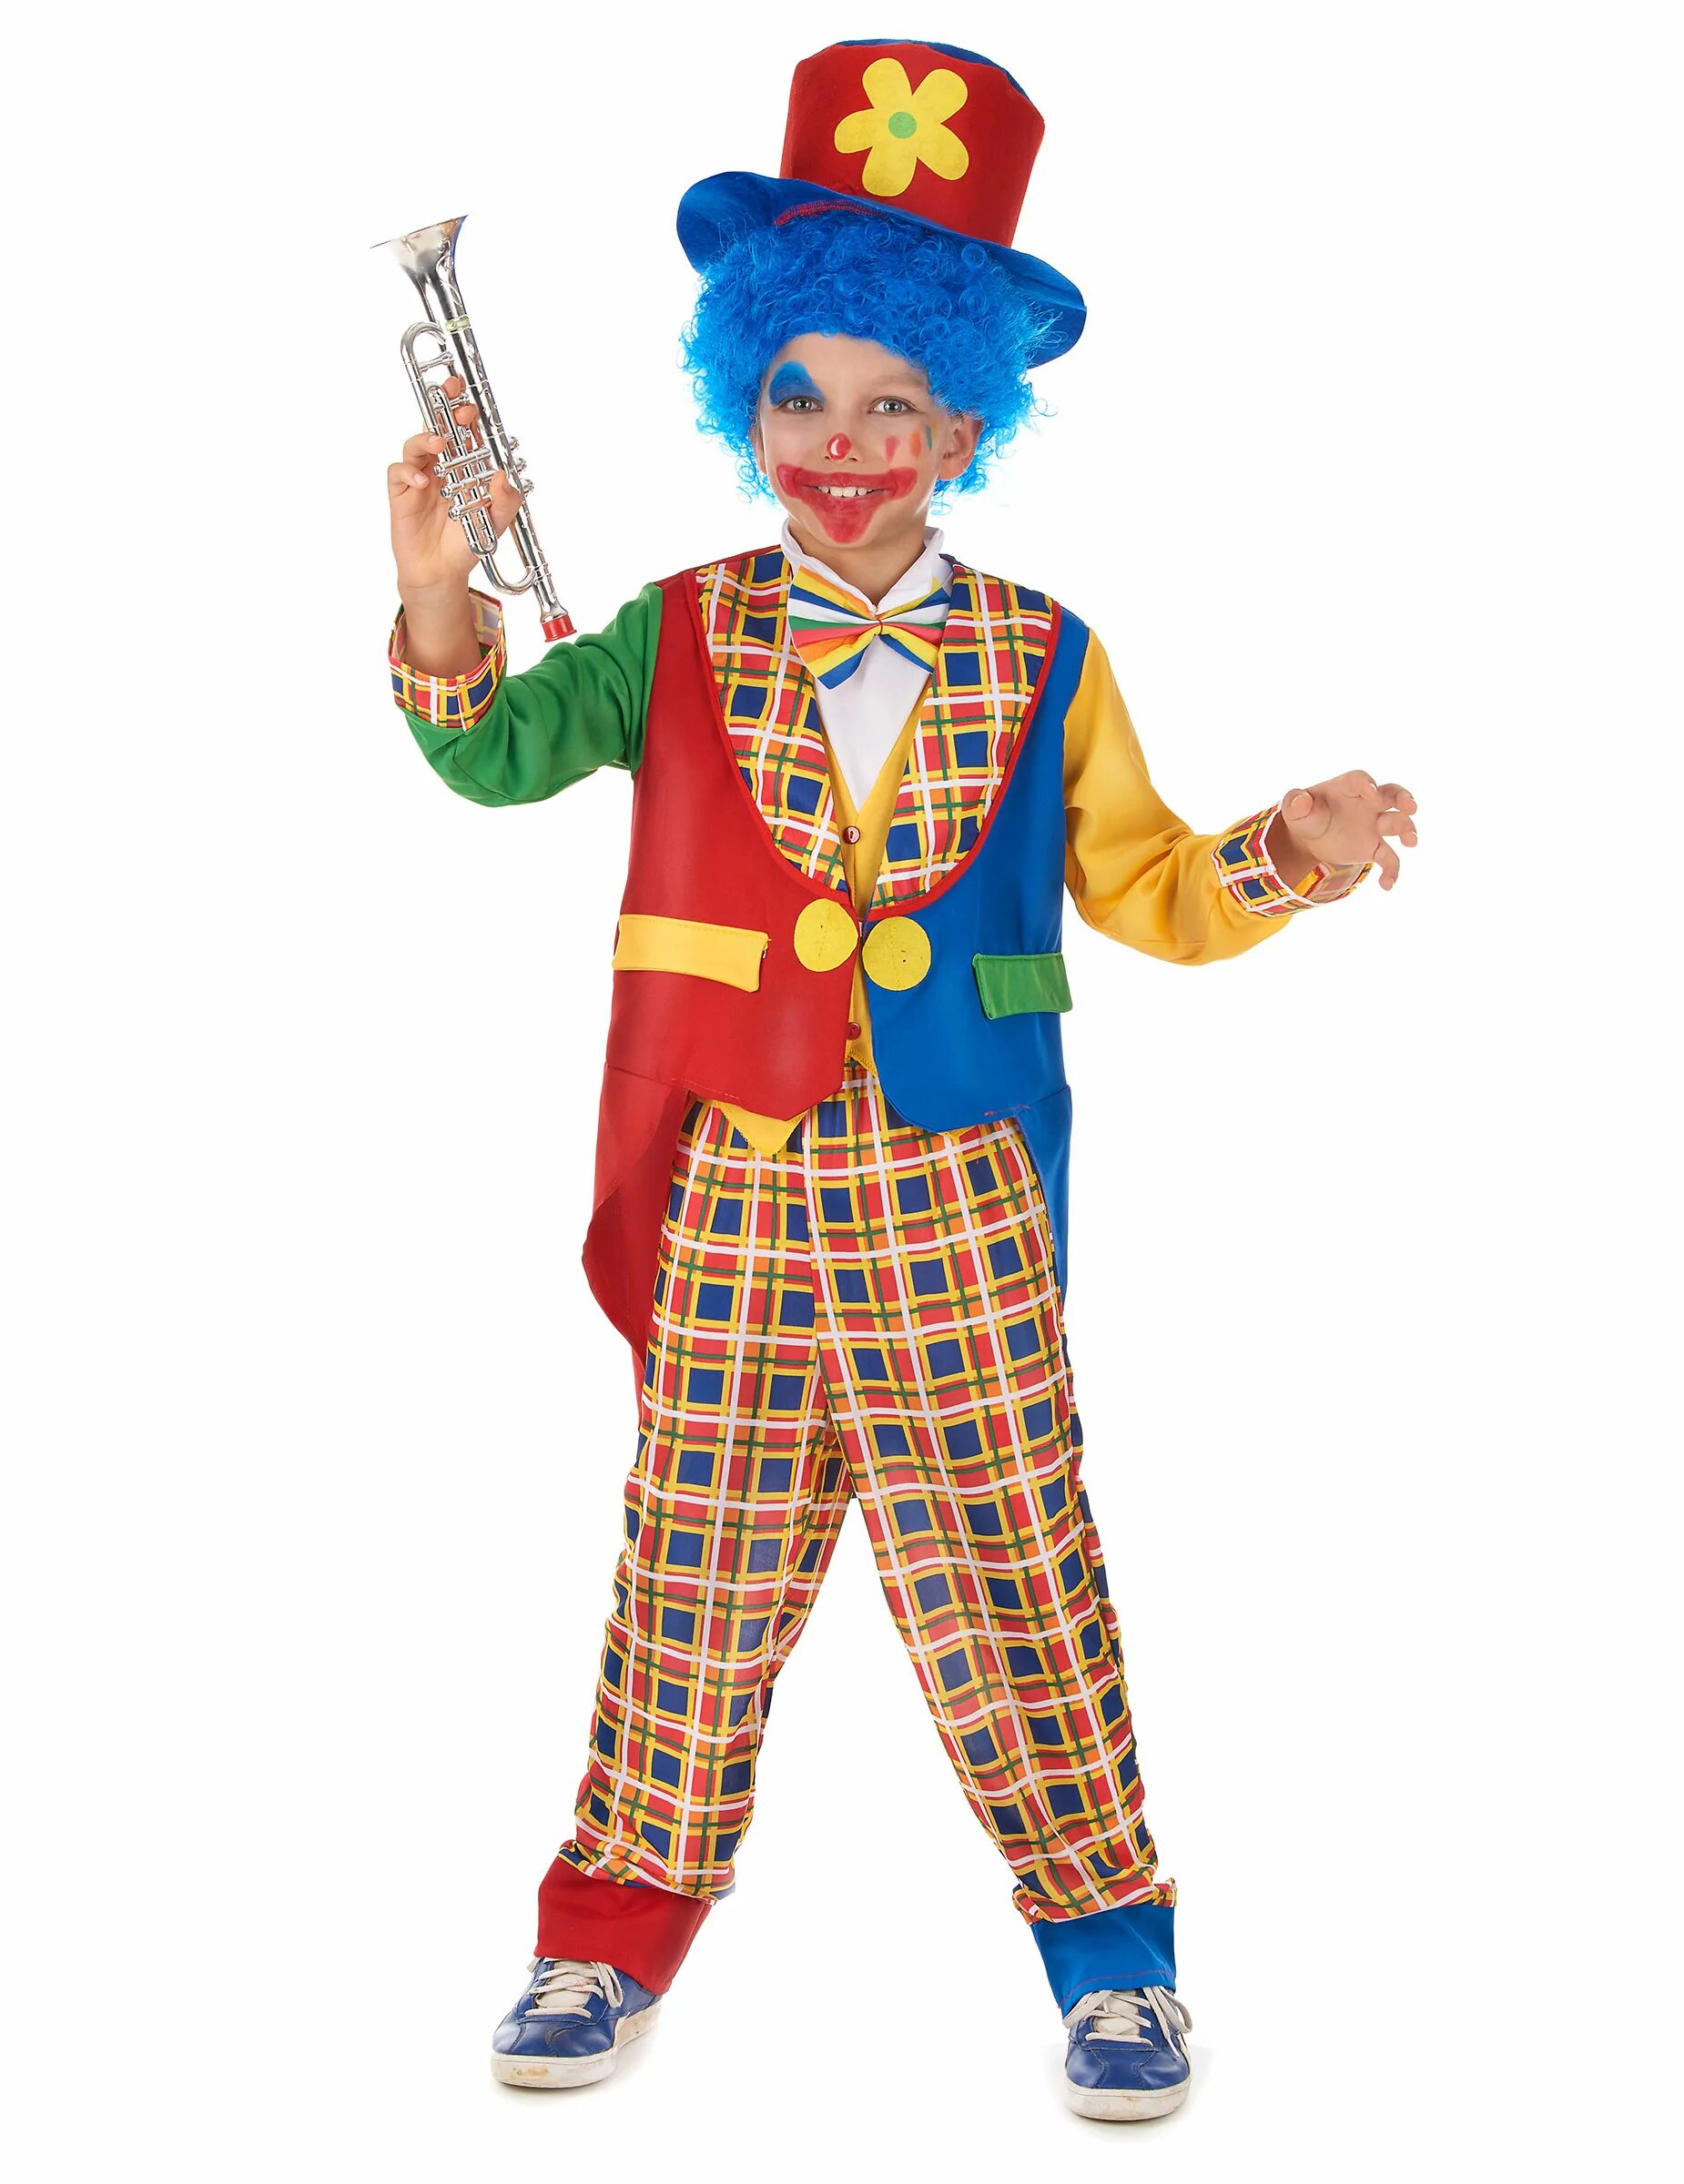 Пацан клоун. Костюм клоуна. Костюм клоуна для мальчика. Клоун костюм детский для мальчика. Костюм клоуна для мальчика на новый год.